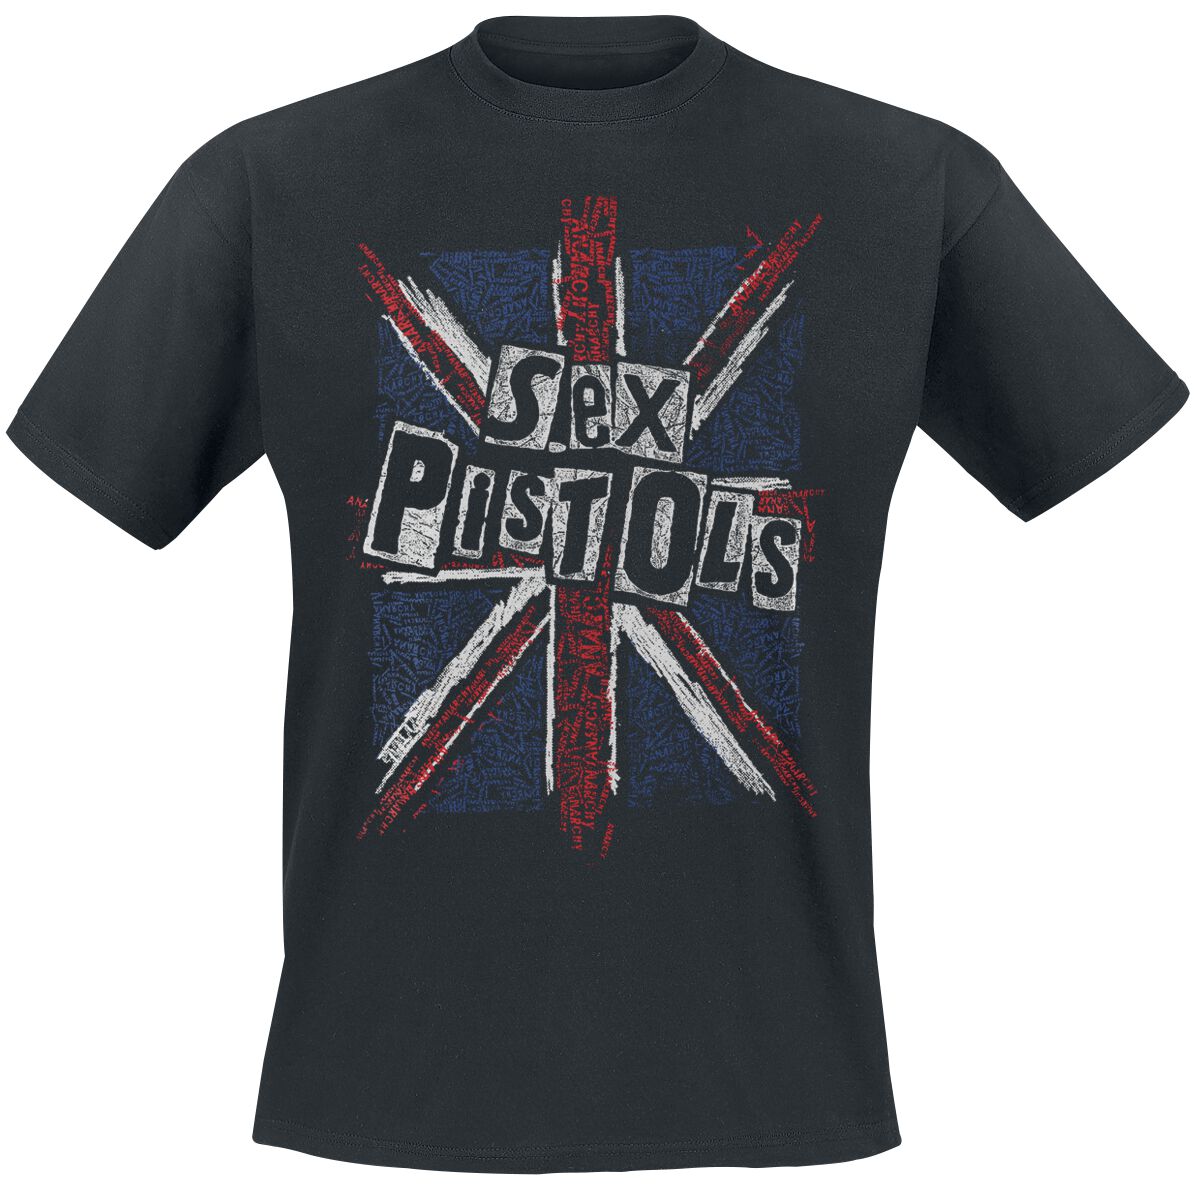 Sex Pistols T-Shirt - Union Jack - M bis XXL - für Männer - Größe XXL - schwarz  - Lizenziertes Merchandise!